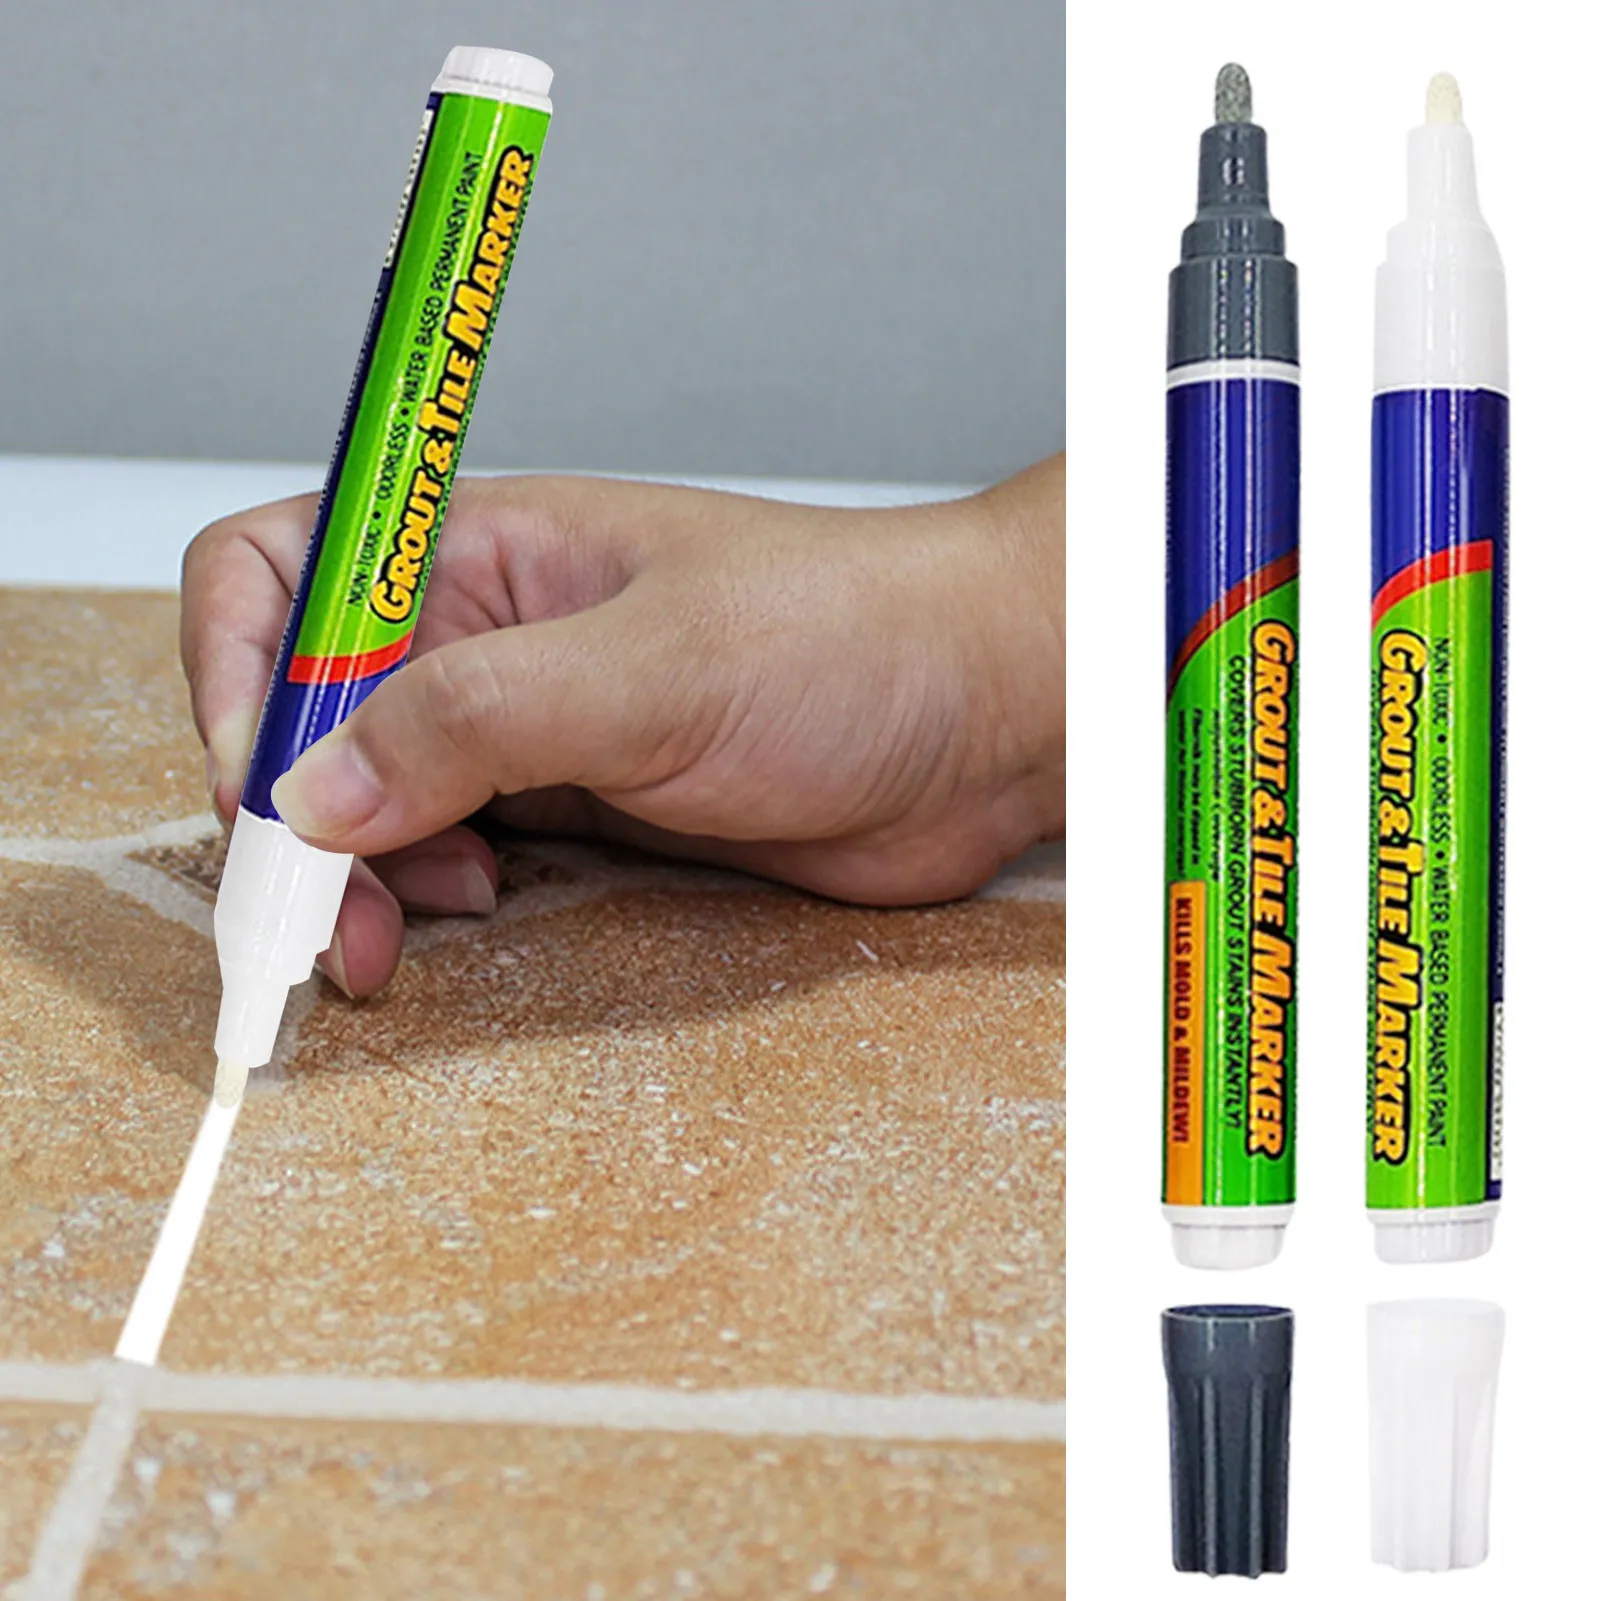 

Водонепроницаемая ручка для ремонта зазора для плитки, белая ручка для заправки плитки, наполнитель с защитой от молдингов, настенная фарфоровая ручка для ванной